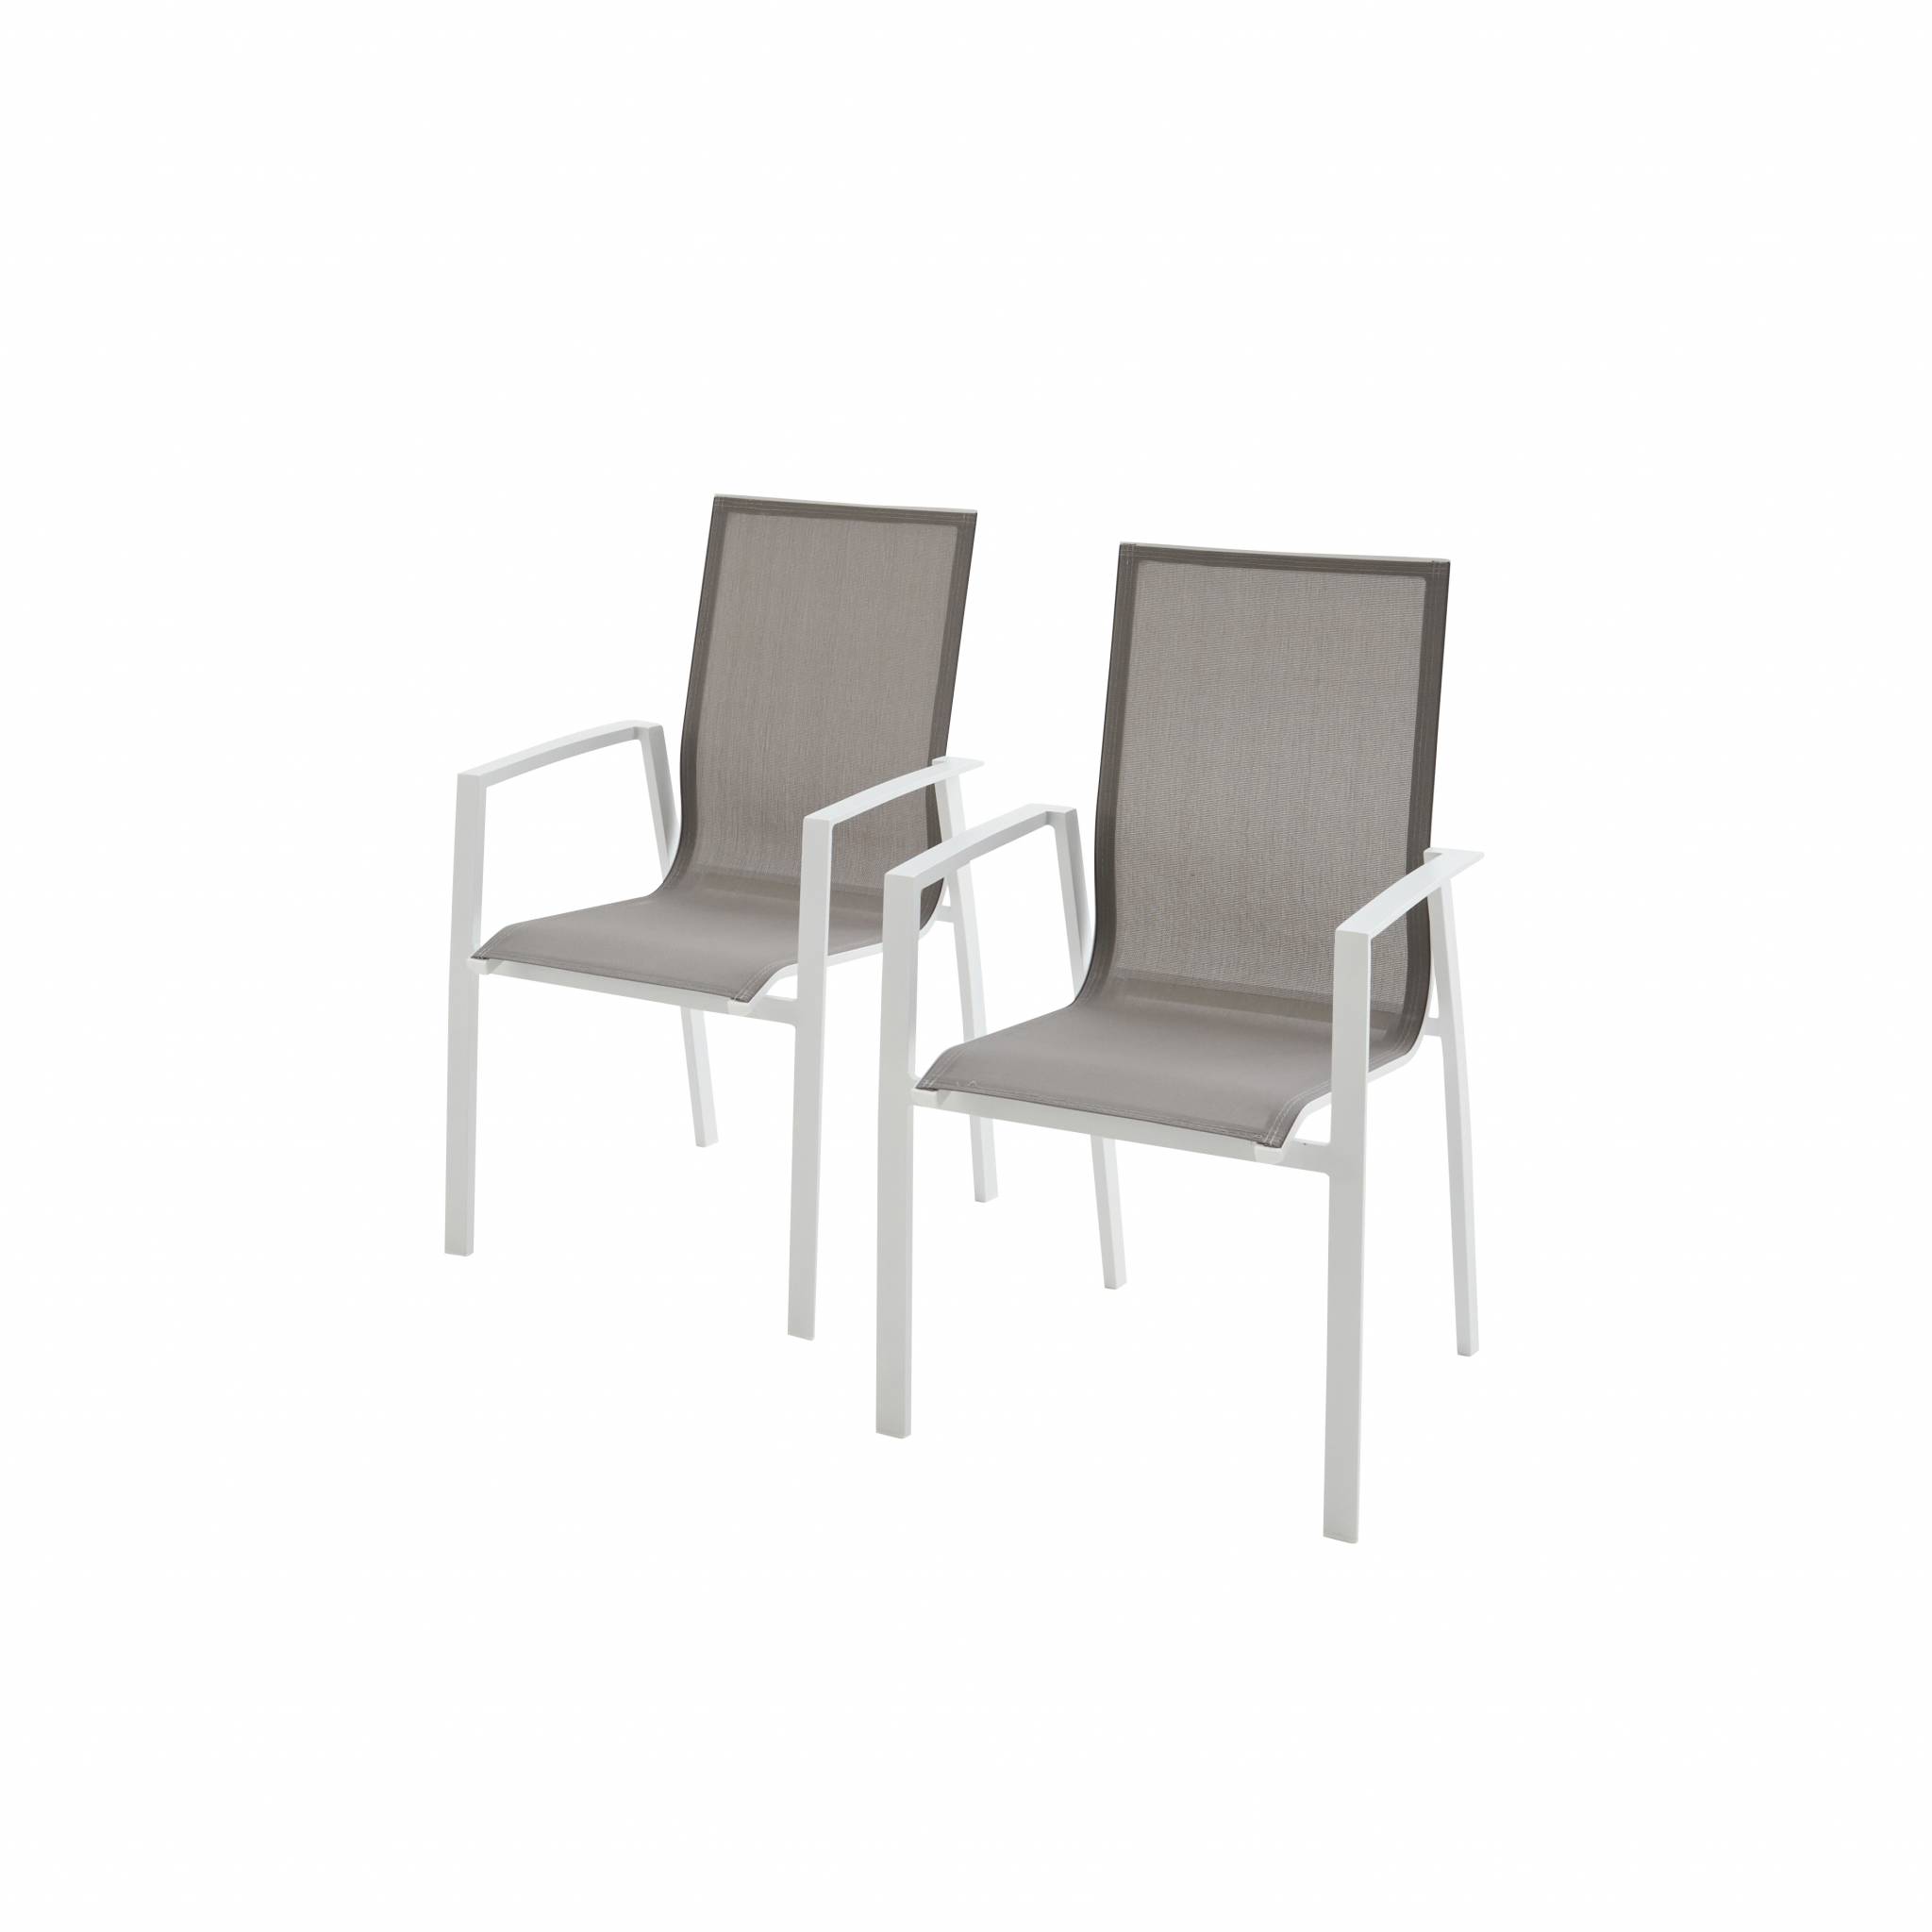 Lot de 2 fauteuils empilables en aluminium blanc et textilène taupe